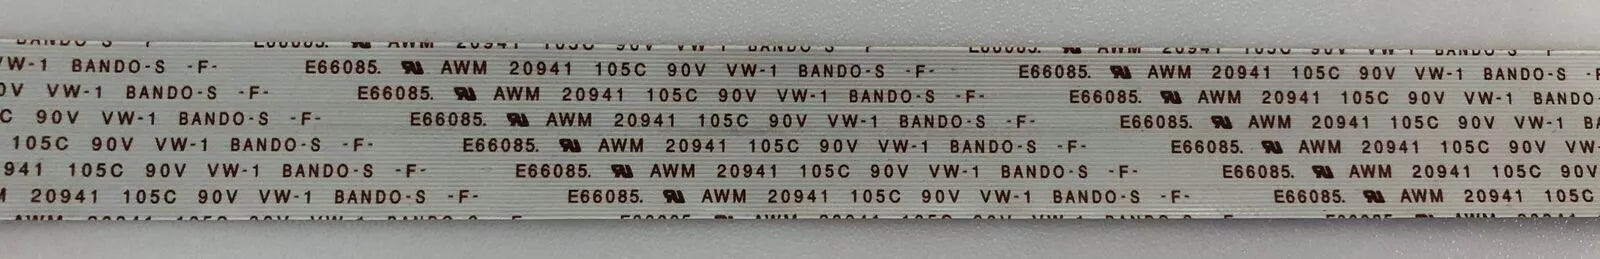 E66085 AWM 20941 105C 90V VW-1 BANDO-S F A001221-B CABLE - PIONEER PDP-435PE